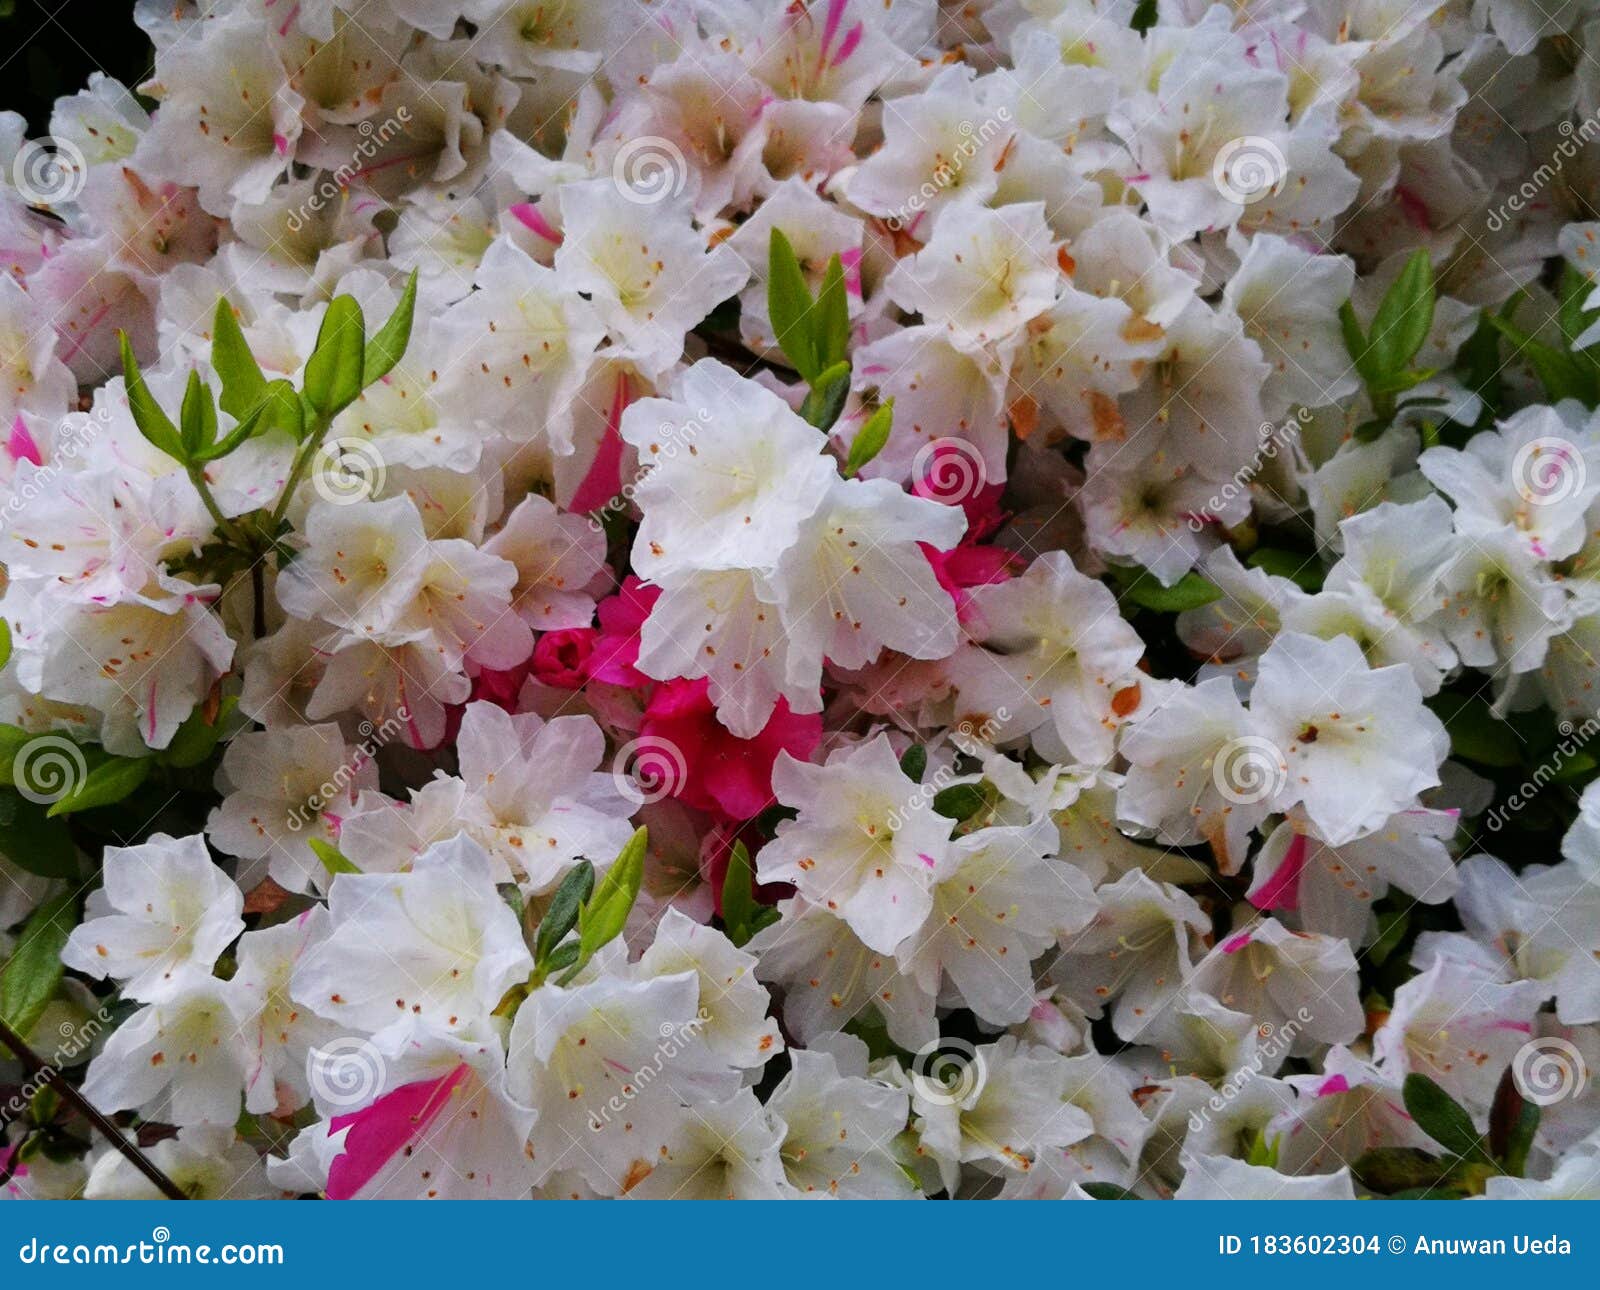 夏天花园里绽放着艳丽的白粉百合 东方百合花 美丽的百合花 库存图片 - 图片 包括有 宏指令, 花卉: 179910825